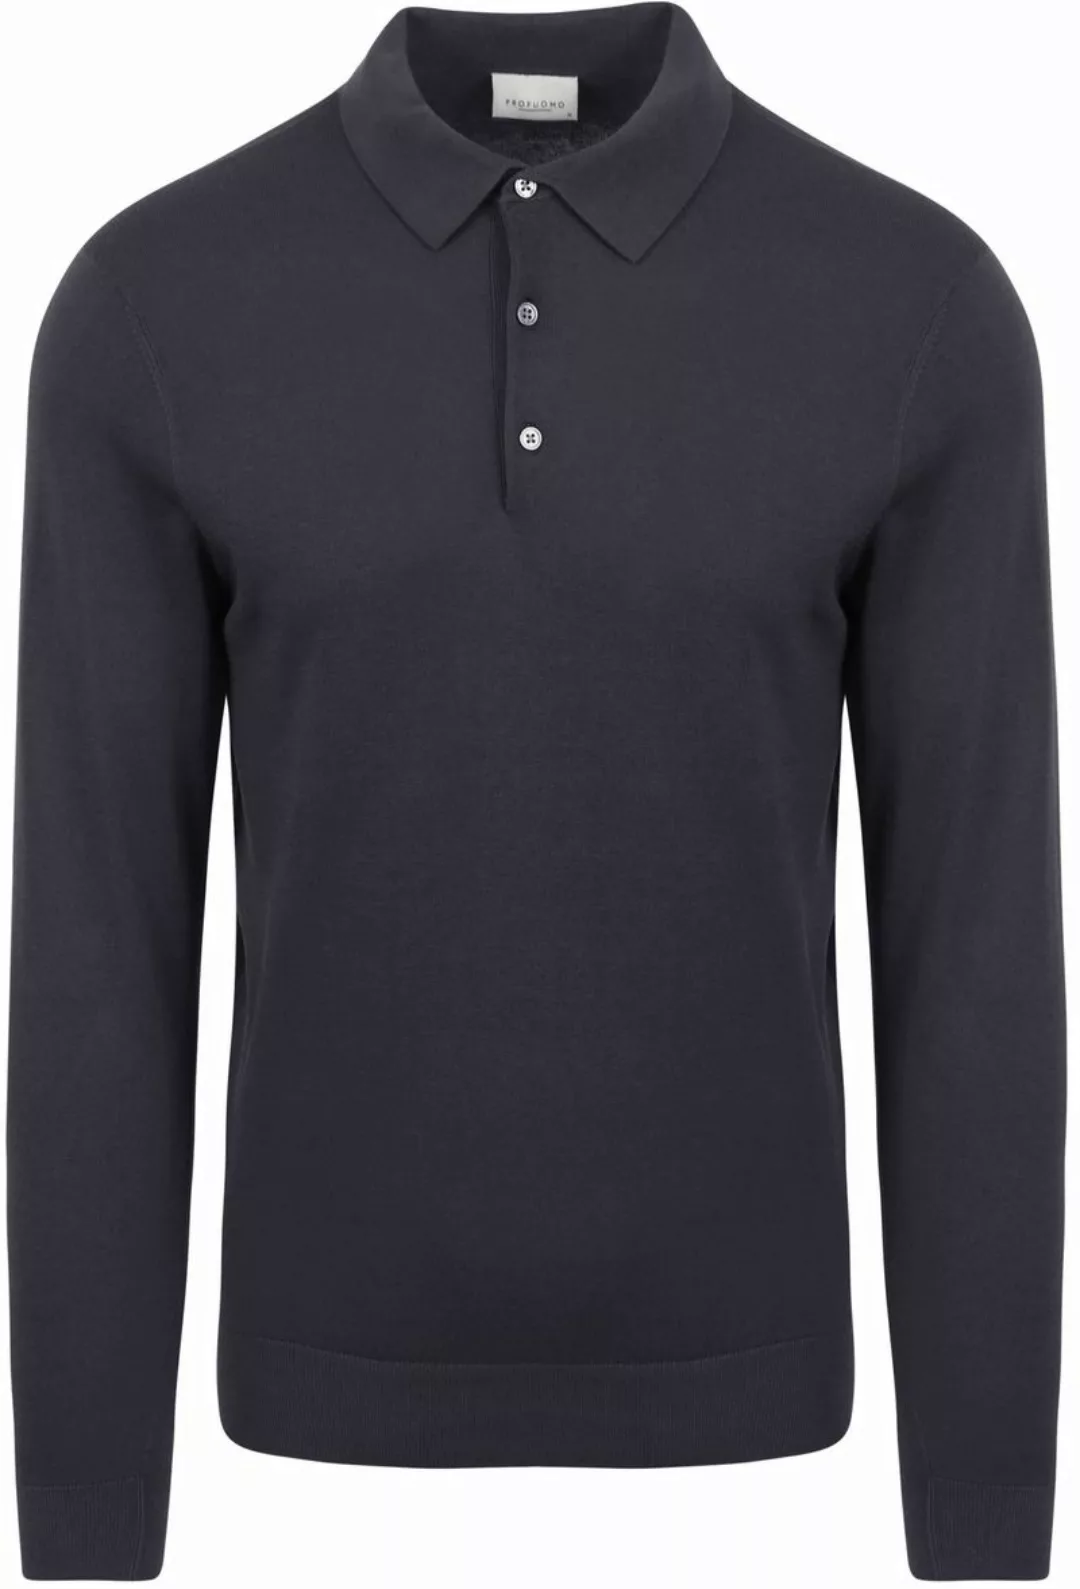 Profuomo Poloshirt Cool Cotton Navy - Größe L günstig online kaufen